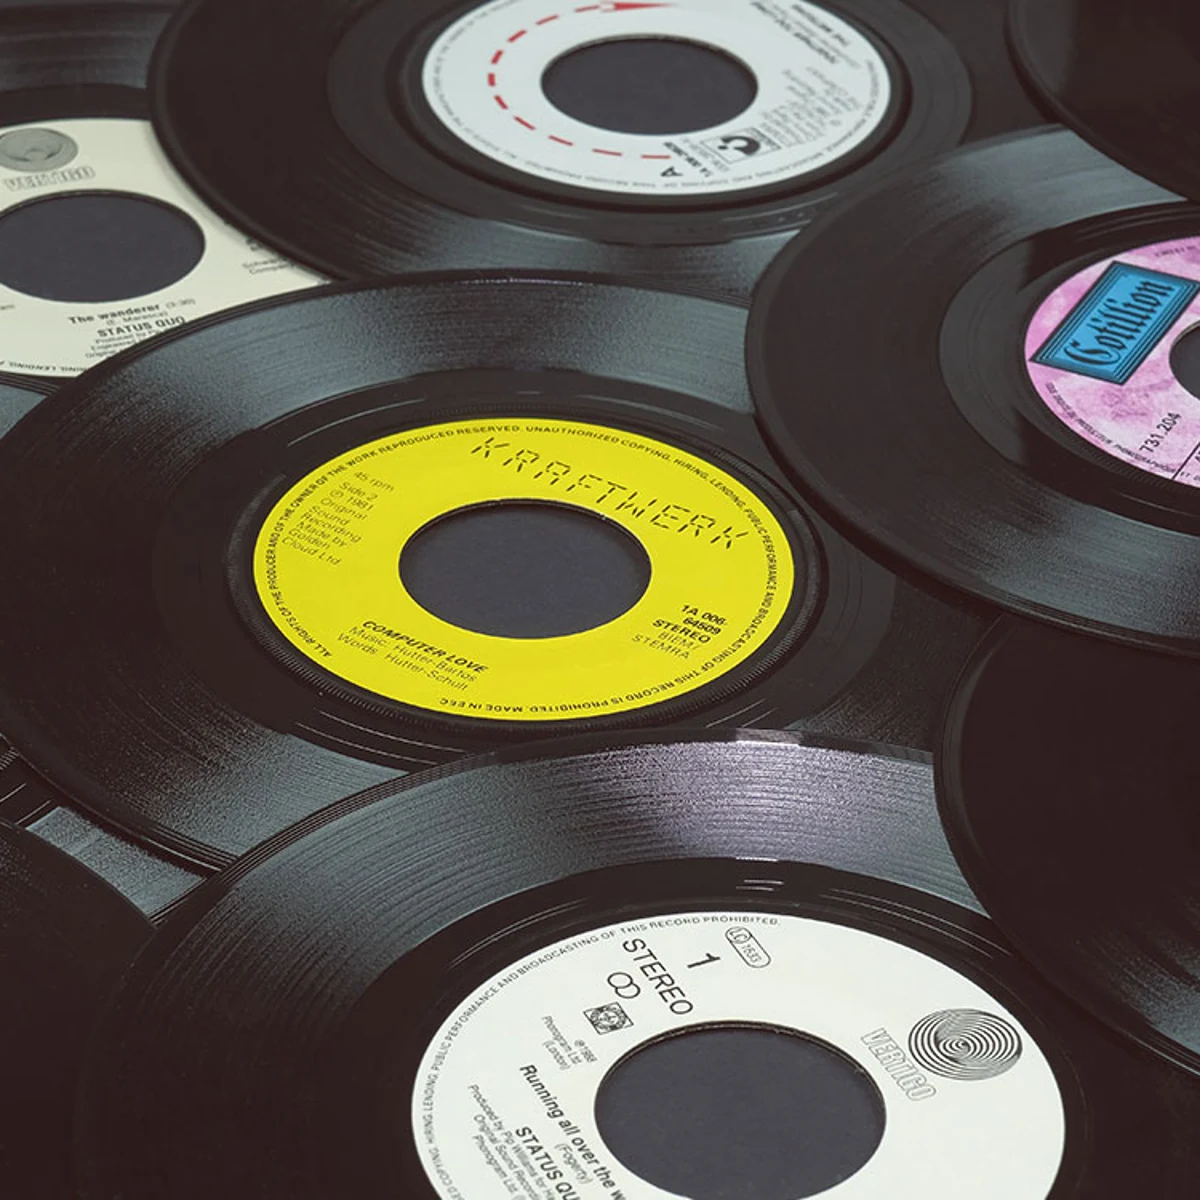 Los vinilos superan en ventas a los CDs: ¿Moda pasajera o cambio